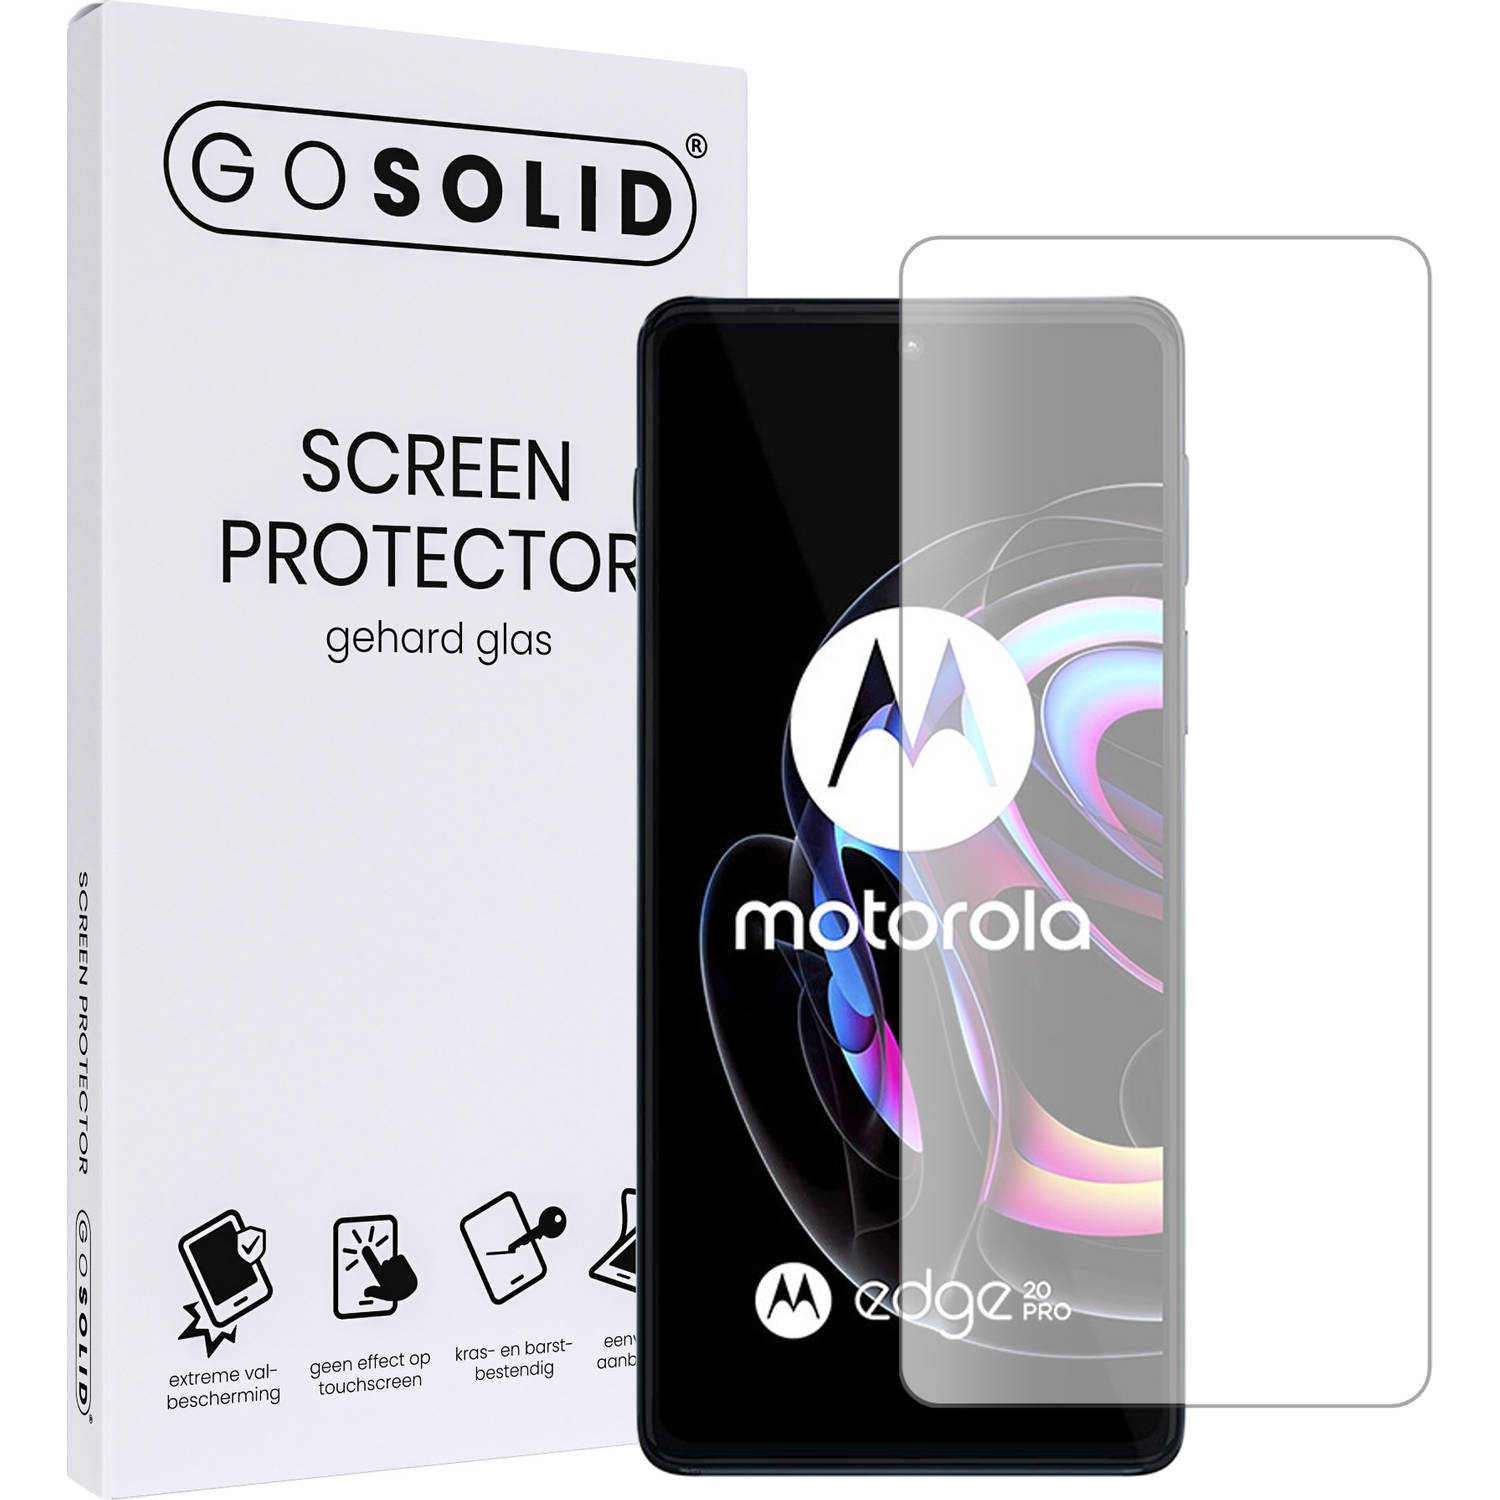 GO SOLID! Screenprotector voor Motorola Edge 20 pro gehard glas